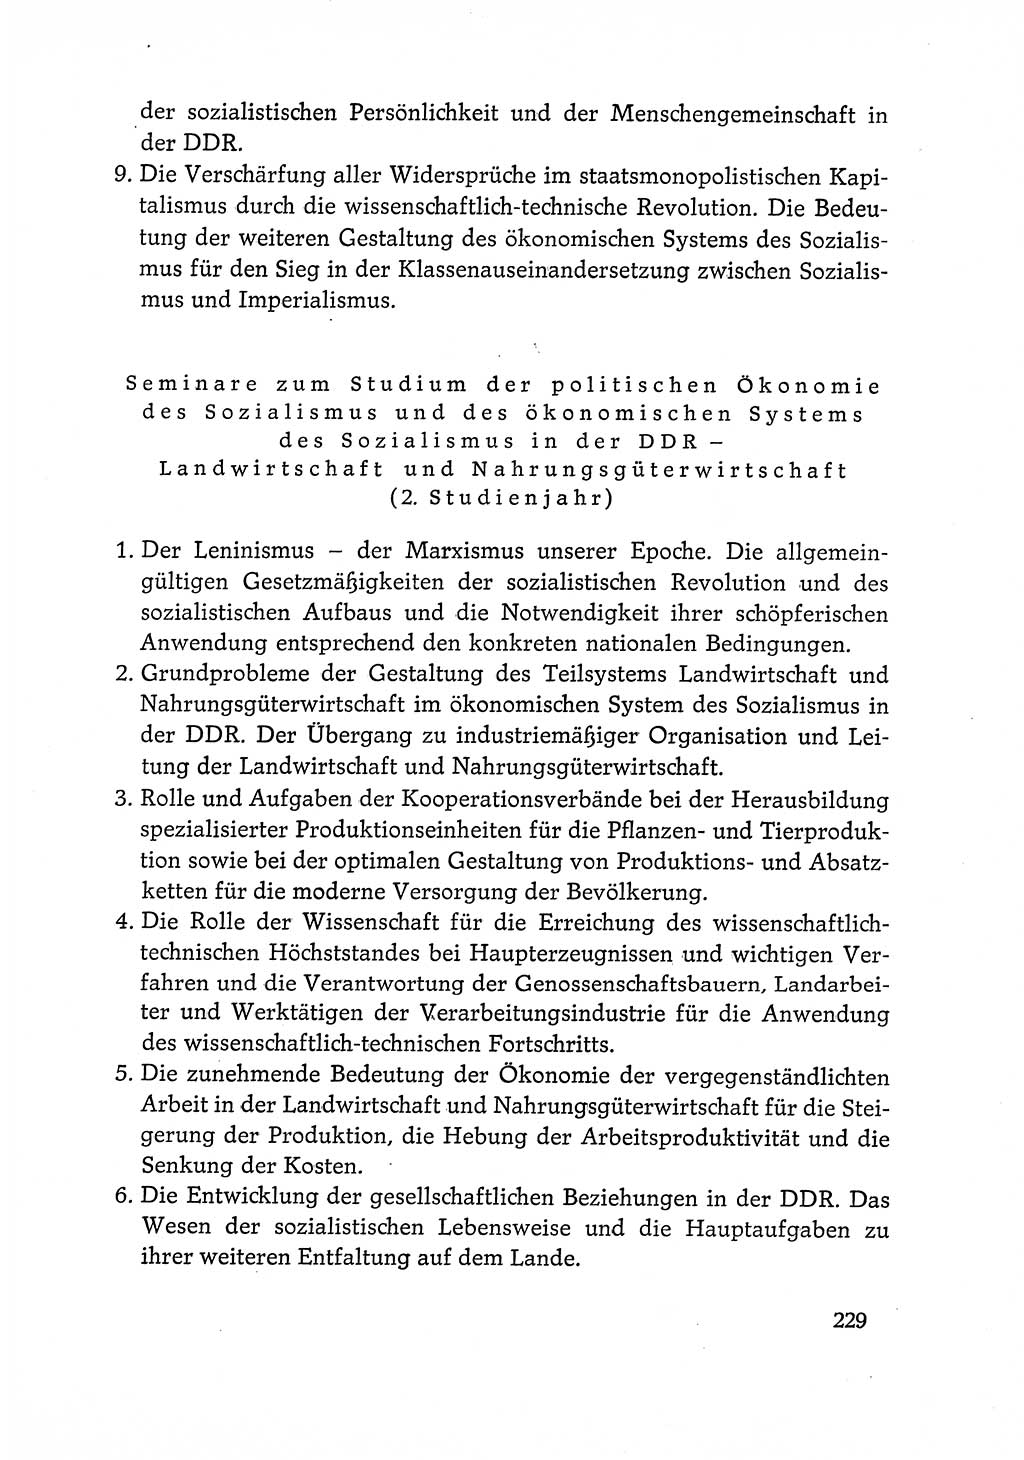 Dokumente der Sozialistischen Einheitspartei Deutschlands (SED) [Deutsche Demokratische Republik (DDR)] 1968-1969, Seite 229 (Dok. SED DDR 1968-1969, S. 229)